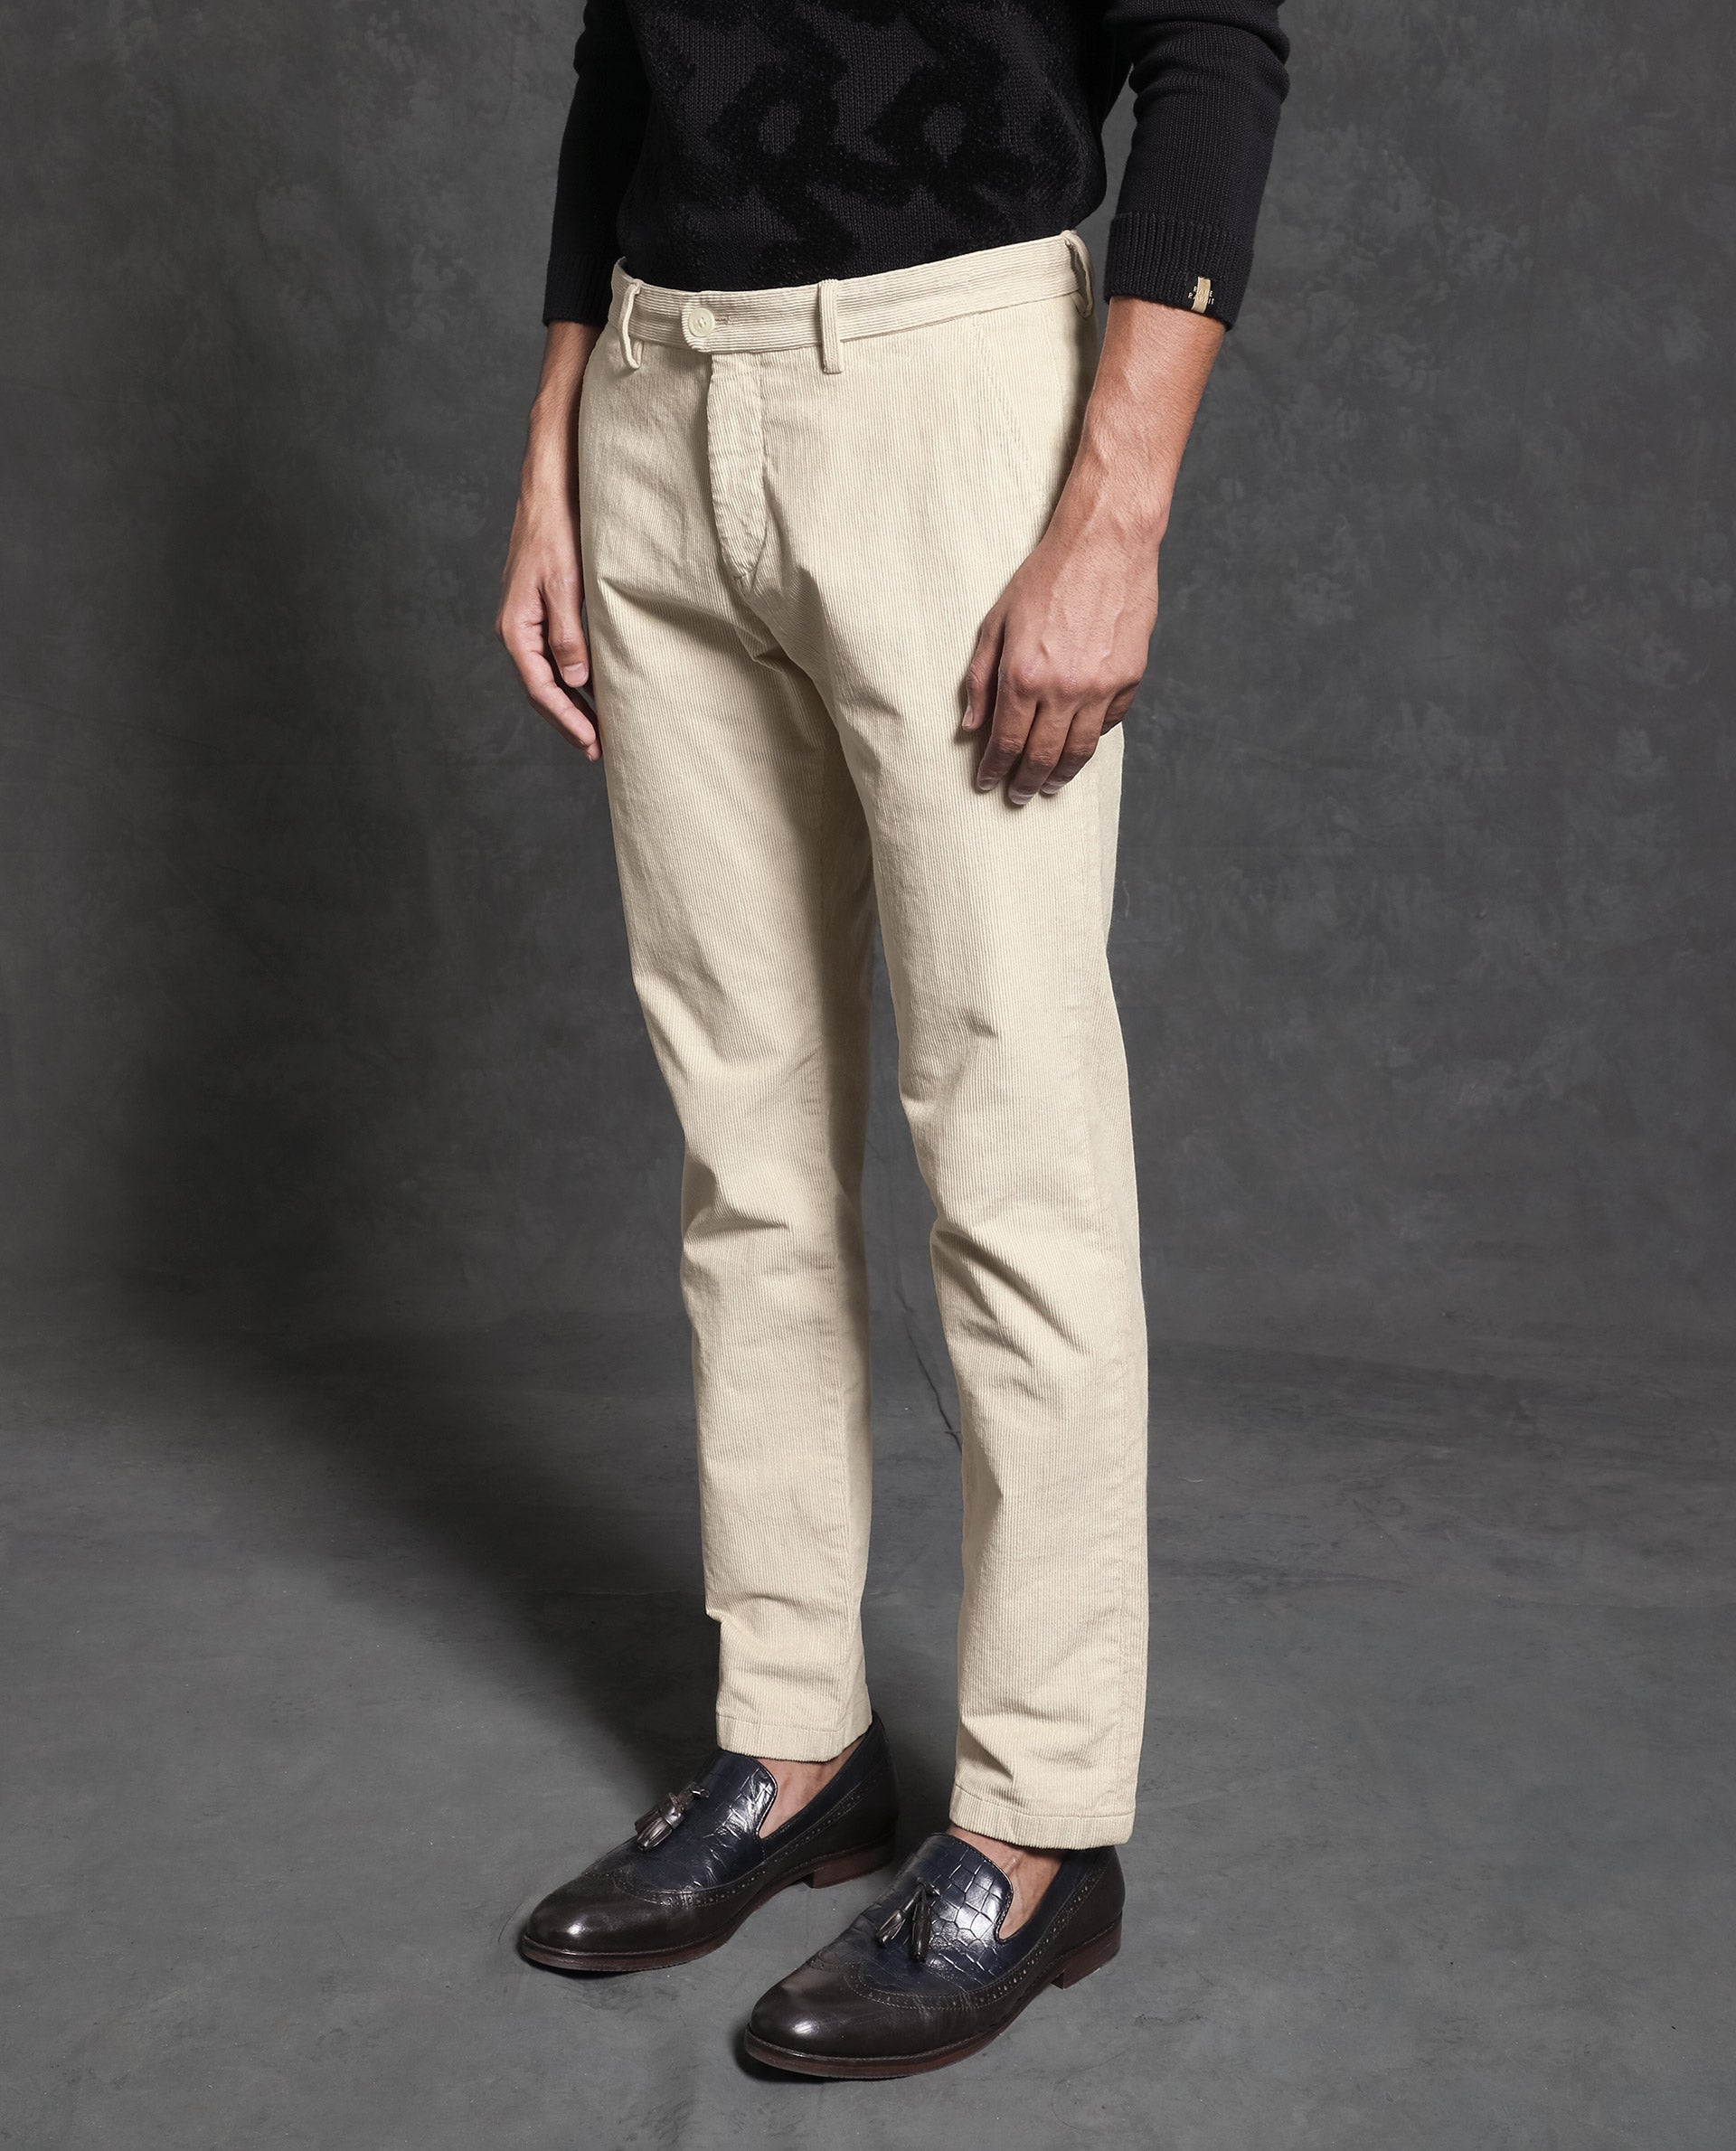 Men's Double Pleat Corduroy Trouser in Navy | Sunspel